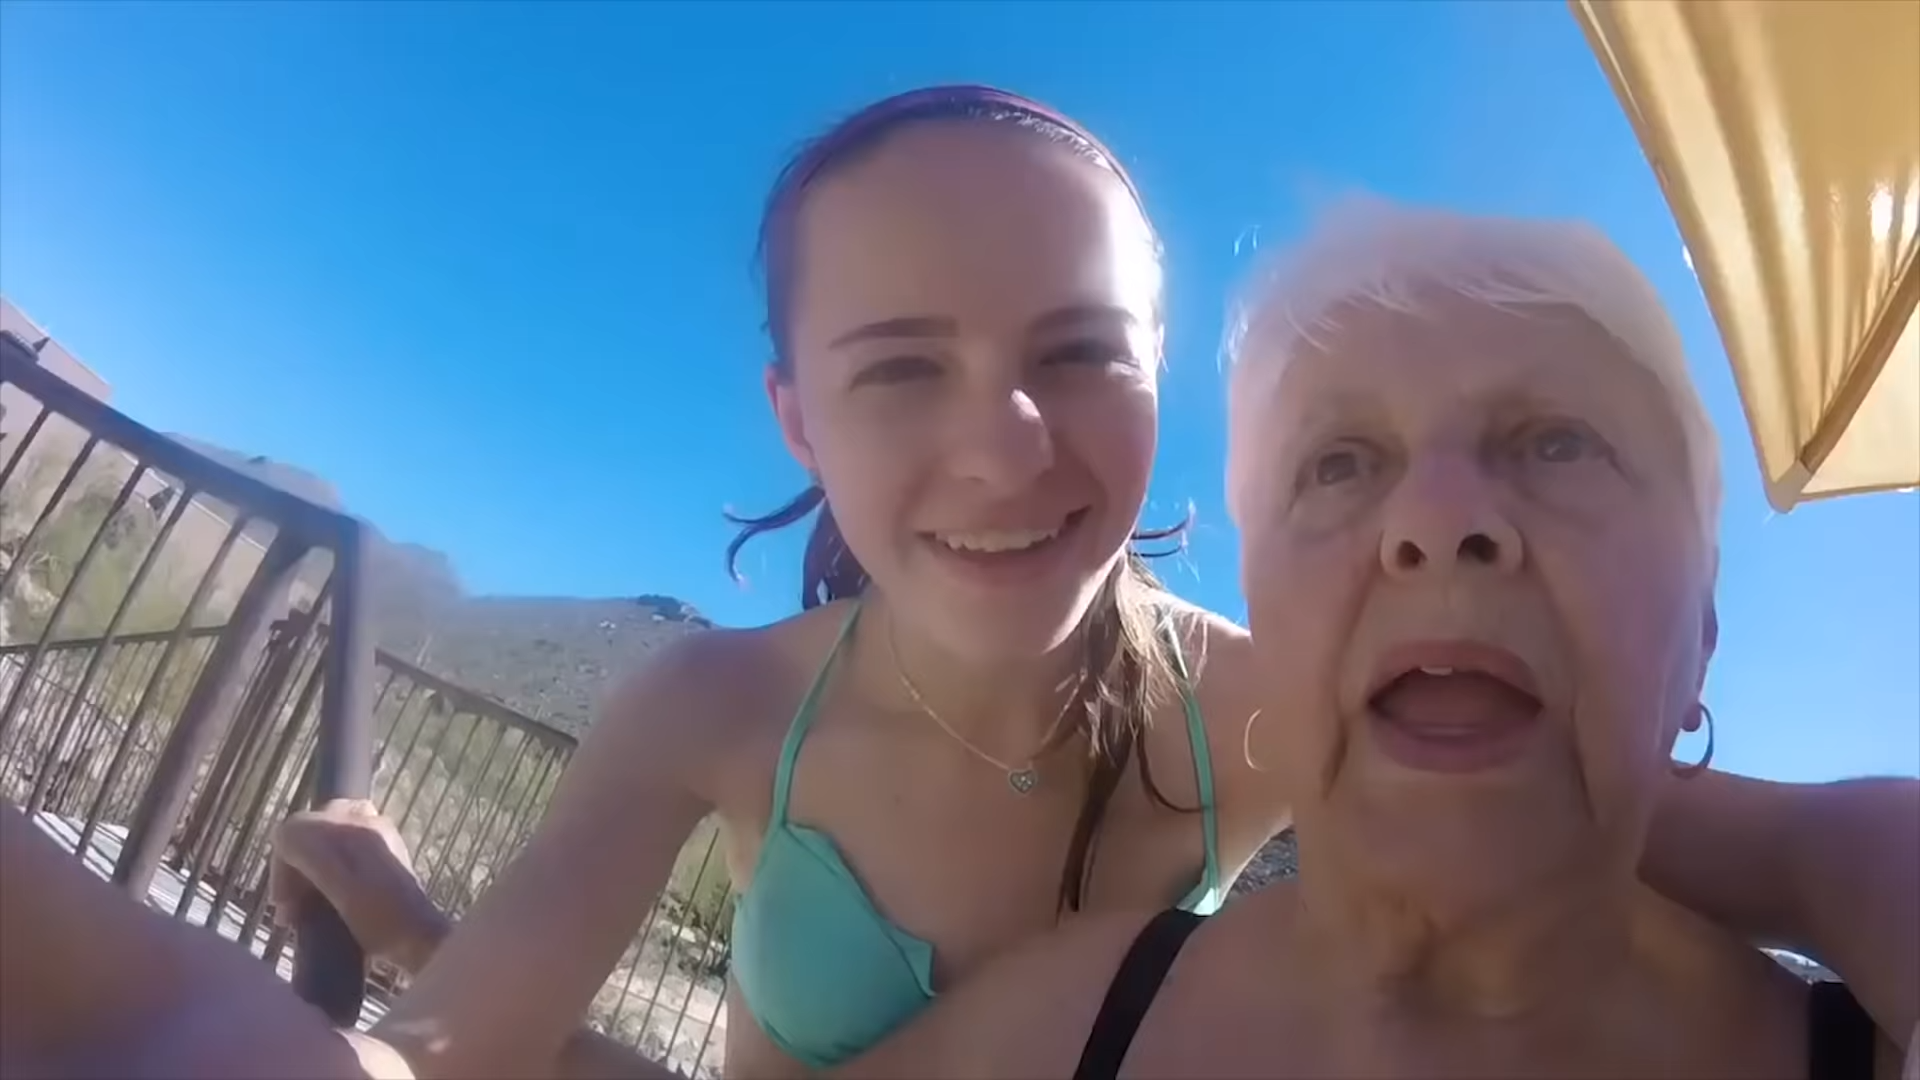 Grandma on the waterslide